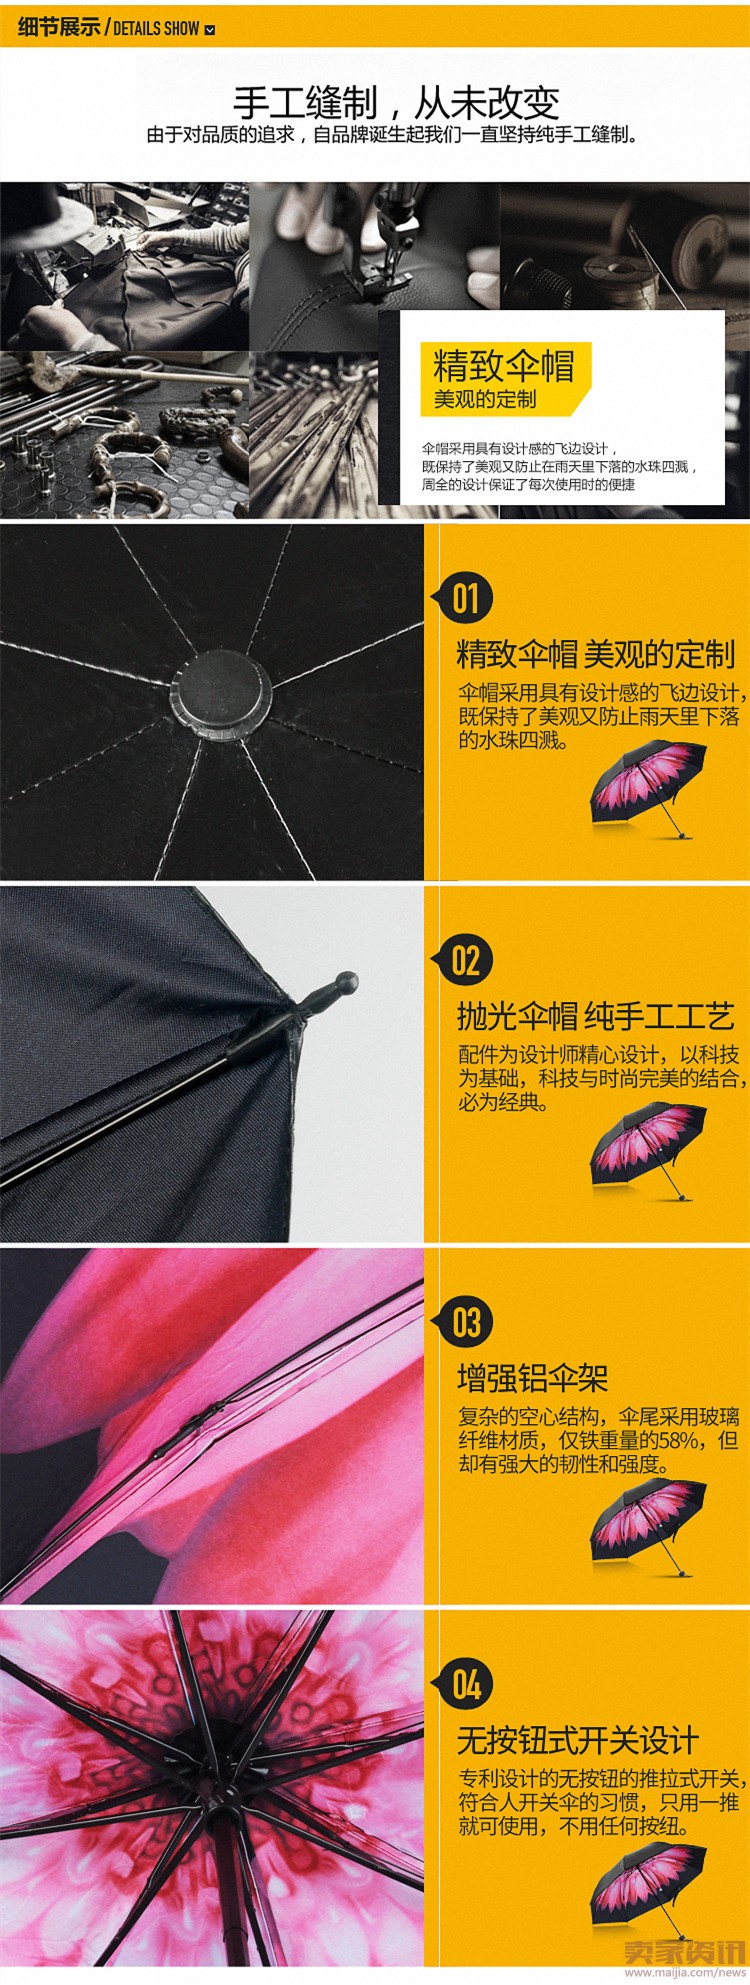 雨伞内页_副本 工艺设计6.jpg